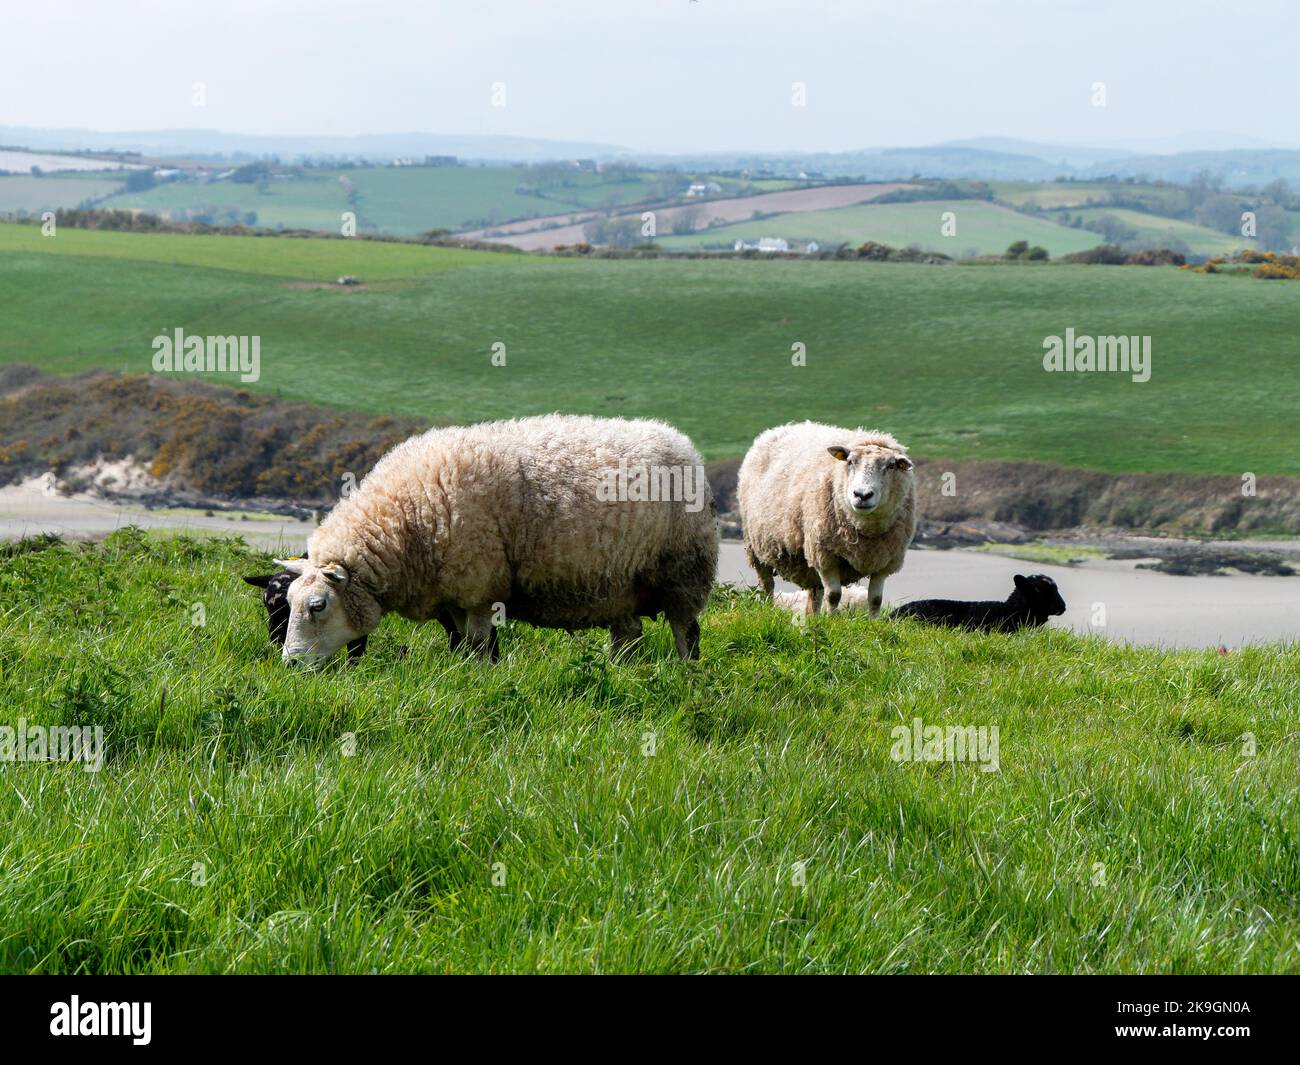 Les moutons se broutent dans un pré vert. Quelques brebis dans un pâturage de fermier. Pâturage libre du bétail. Paysage agricole. Mouton blanc Banque D'Images